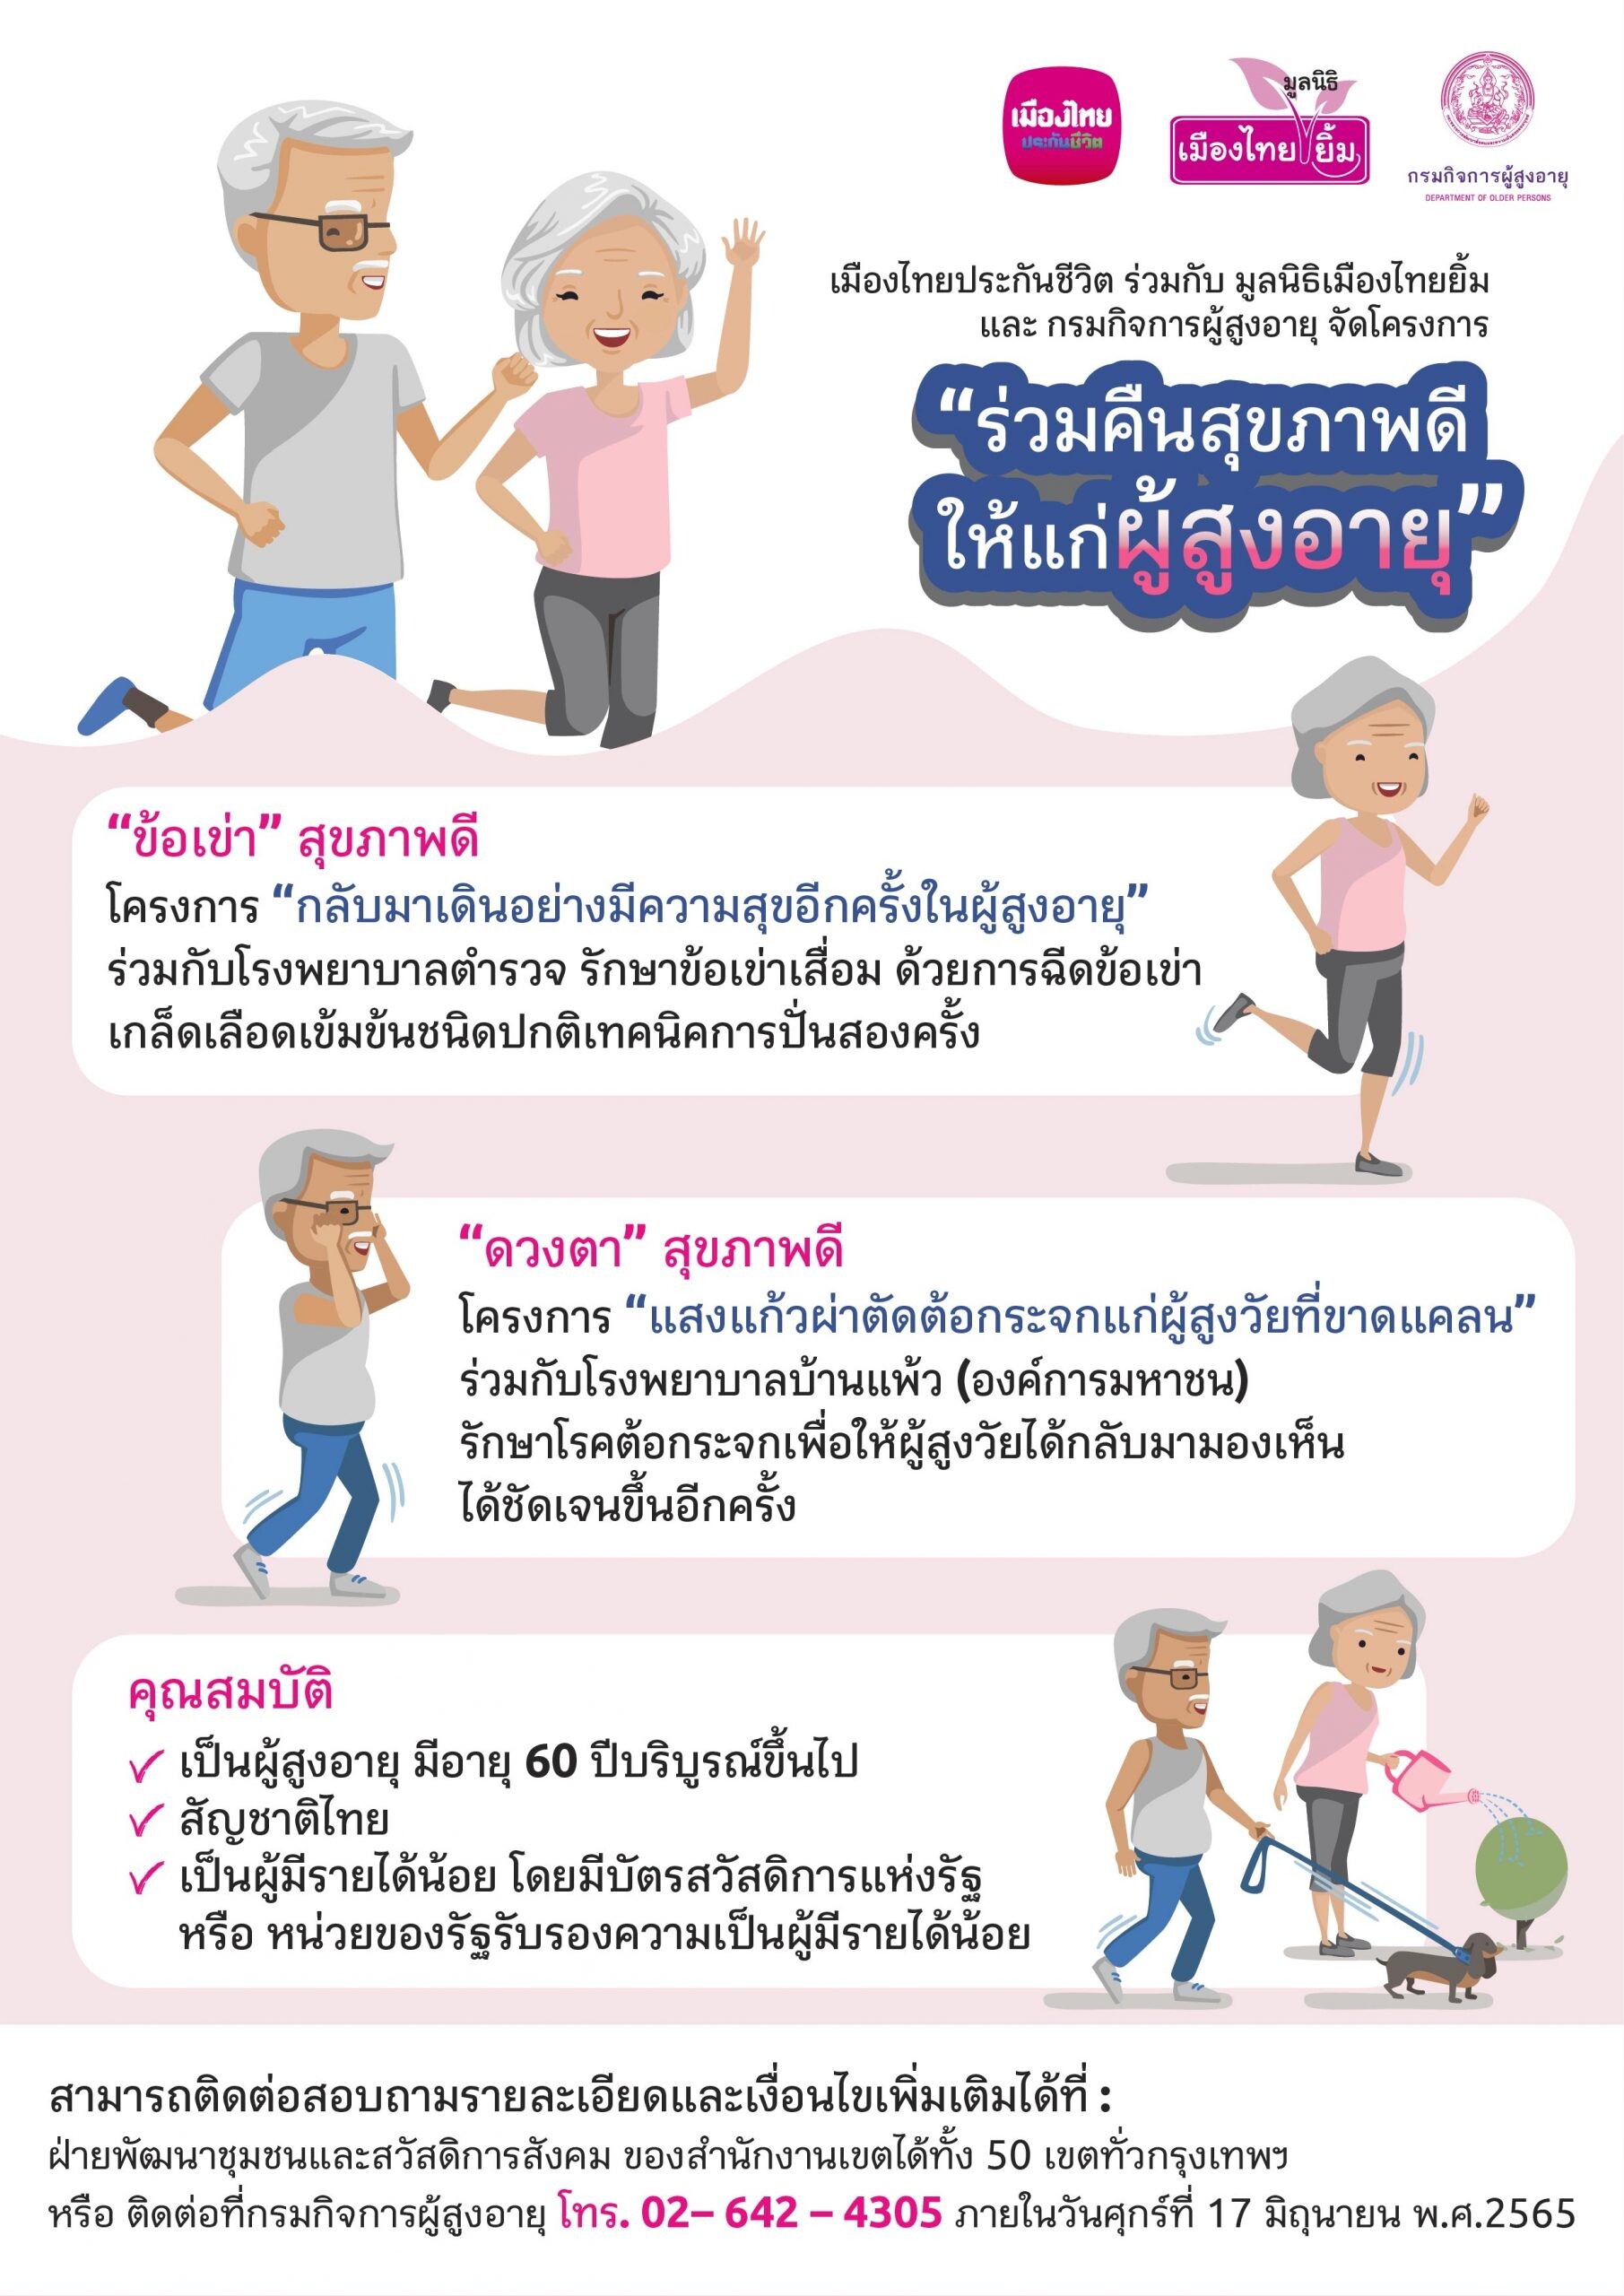 เมืองไทยประกันชีวิต ร่วมกับ มูลนิธิเมืองไทยยิ้ม และกรมกิจการผู้สูงอายุ  จัดโครงการ "ร่วมคืนสุขภาพดีให้แก่ผู้สูงอายุ"